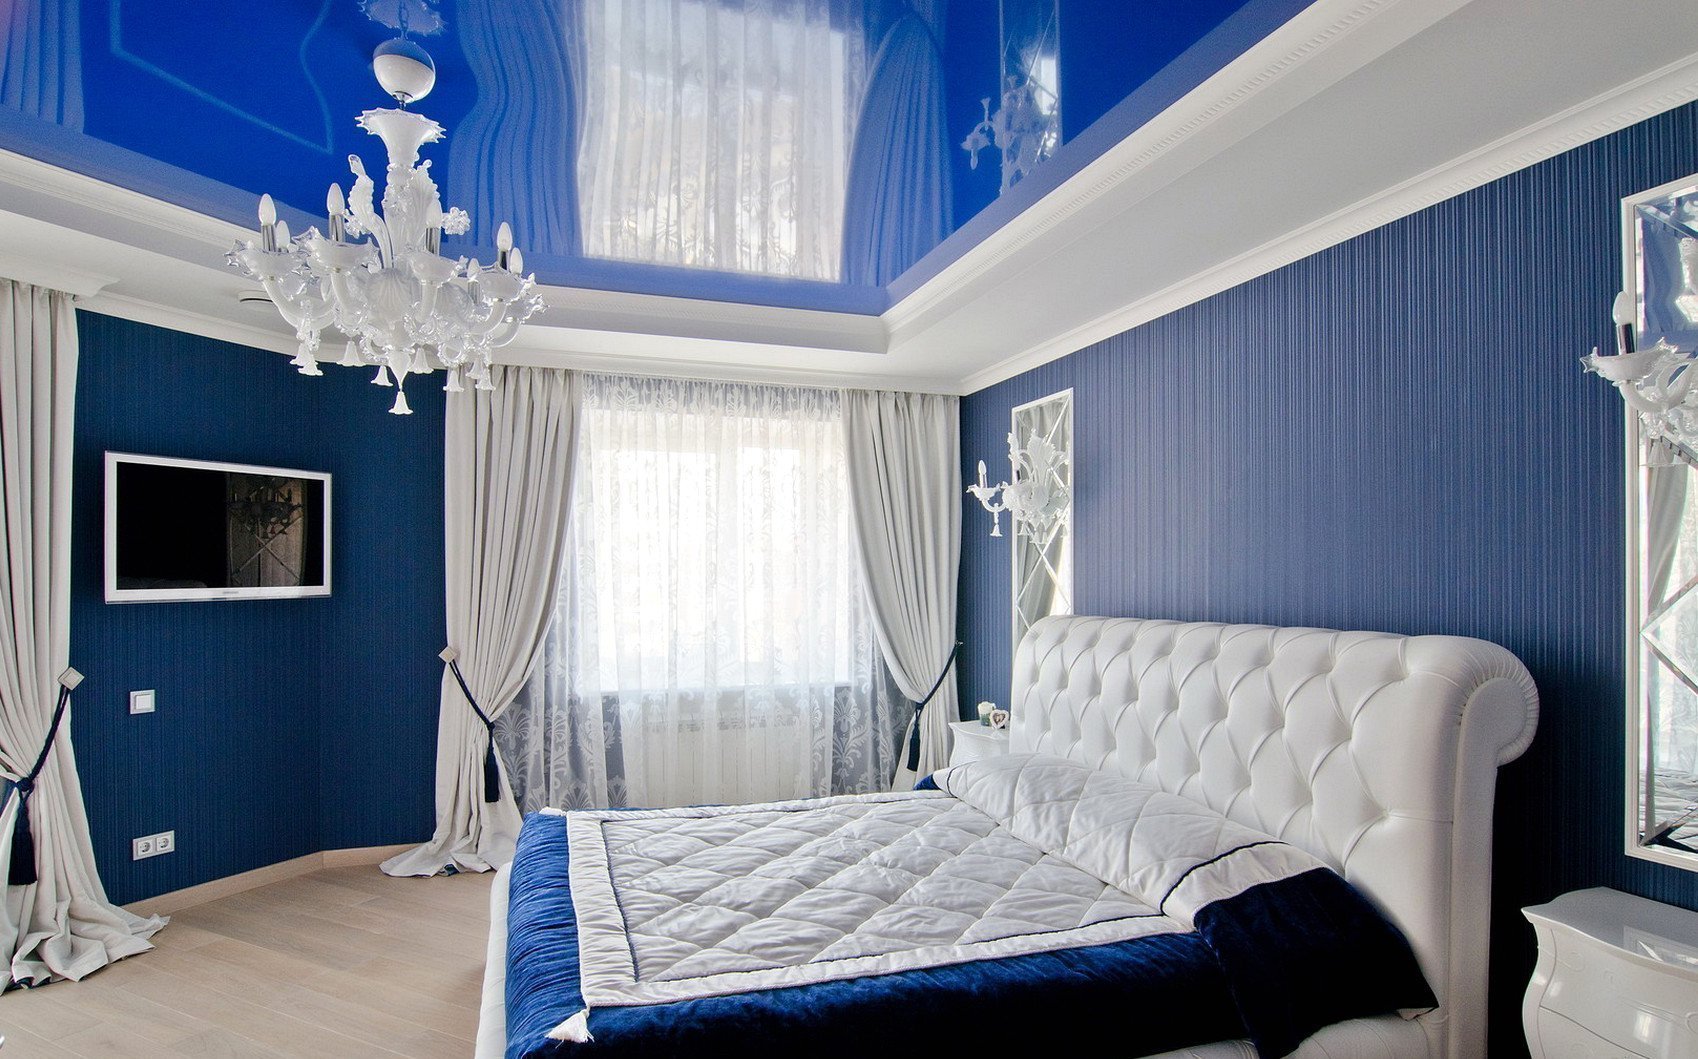 غرفة نوم في الأفكار صور اللون الأزرق